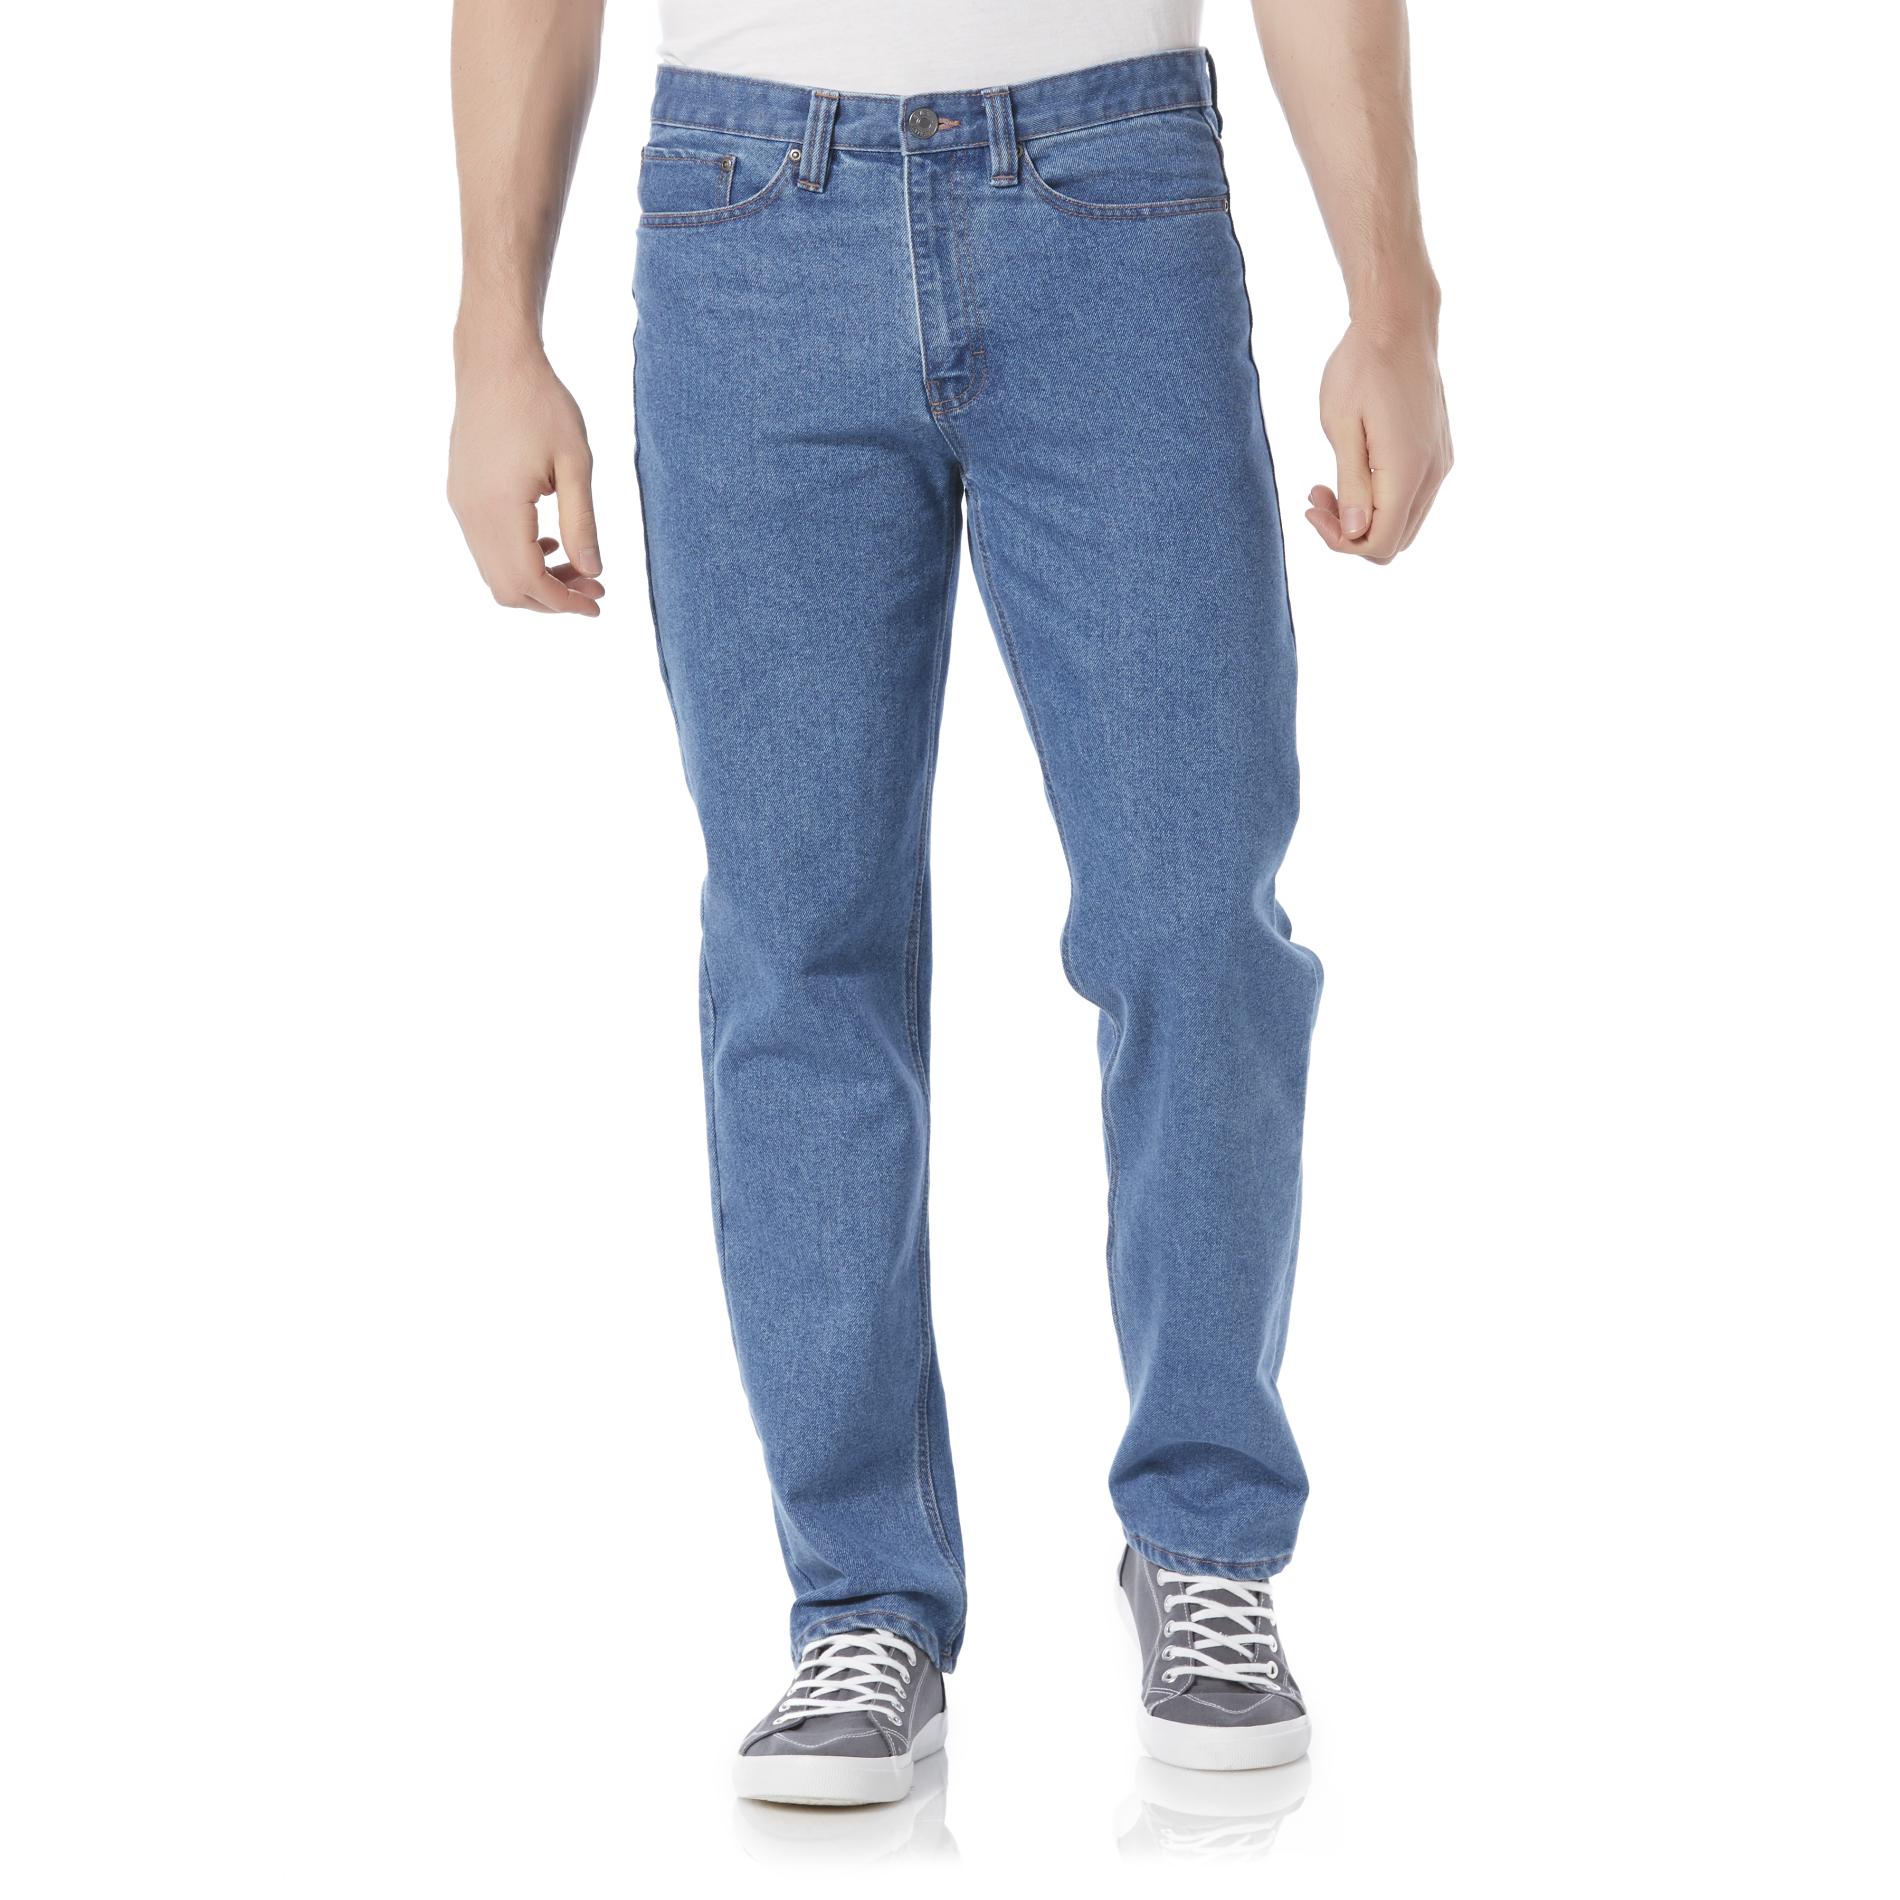 29 inch inside leg jeans mens